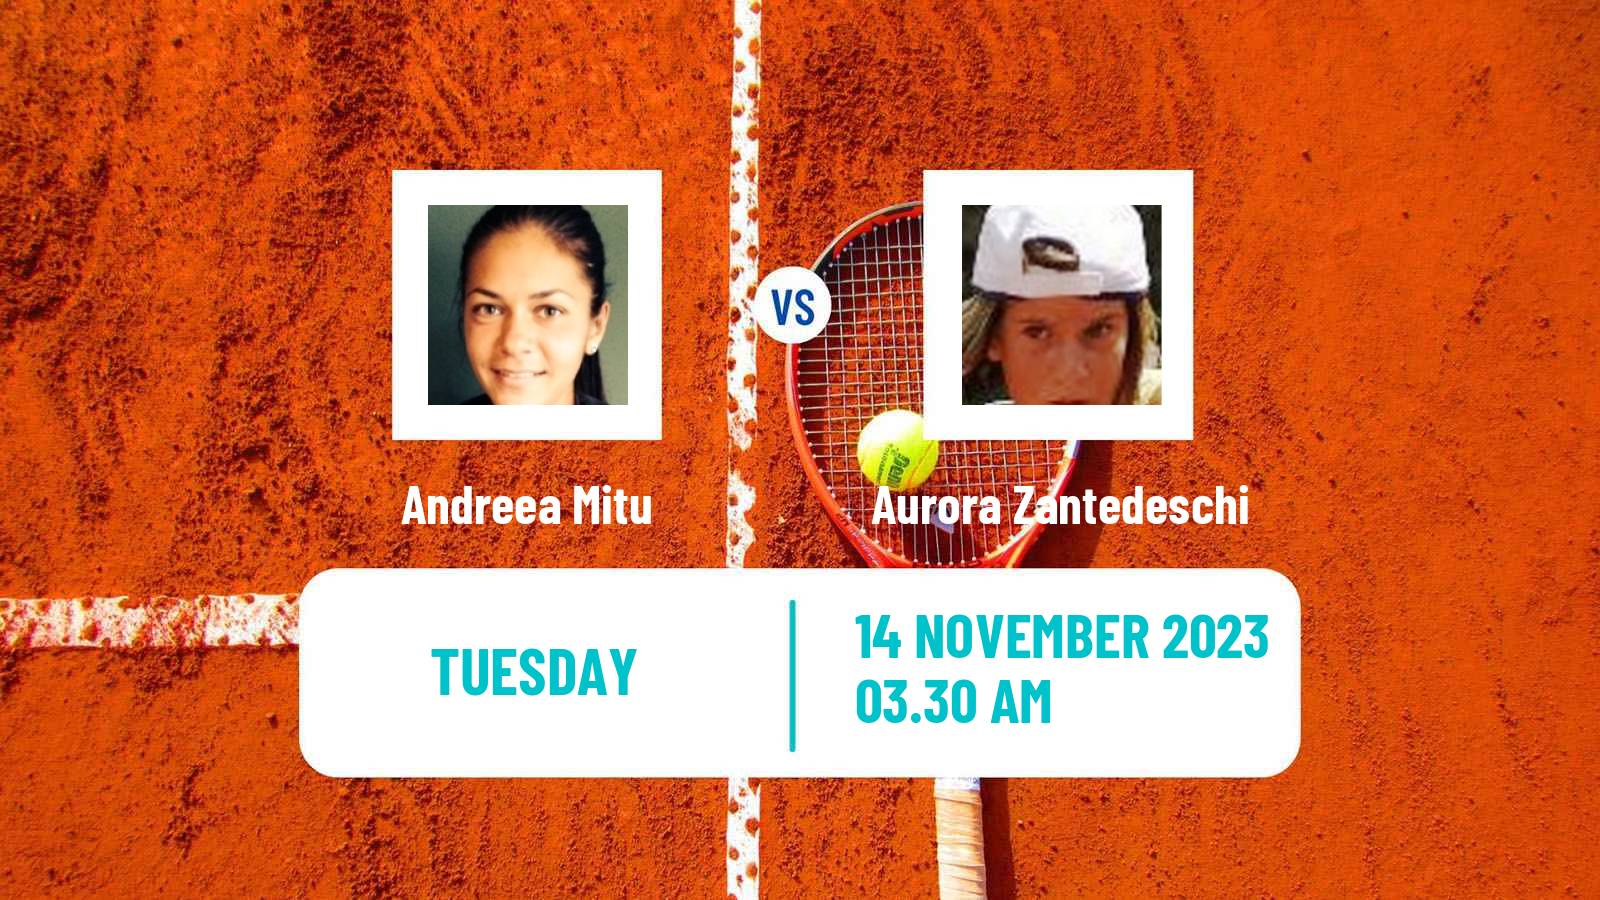 Tennis ITF W25 Heraklion 2 Women 2023 Andreea Mitu - Aurora Zantedeschi